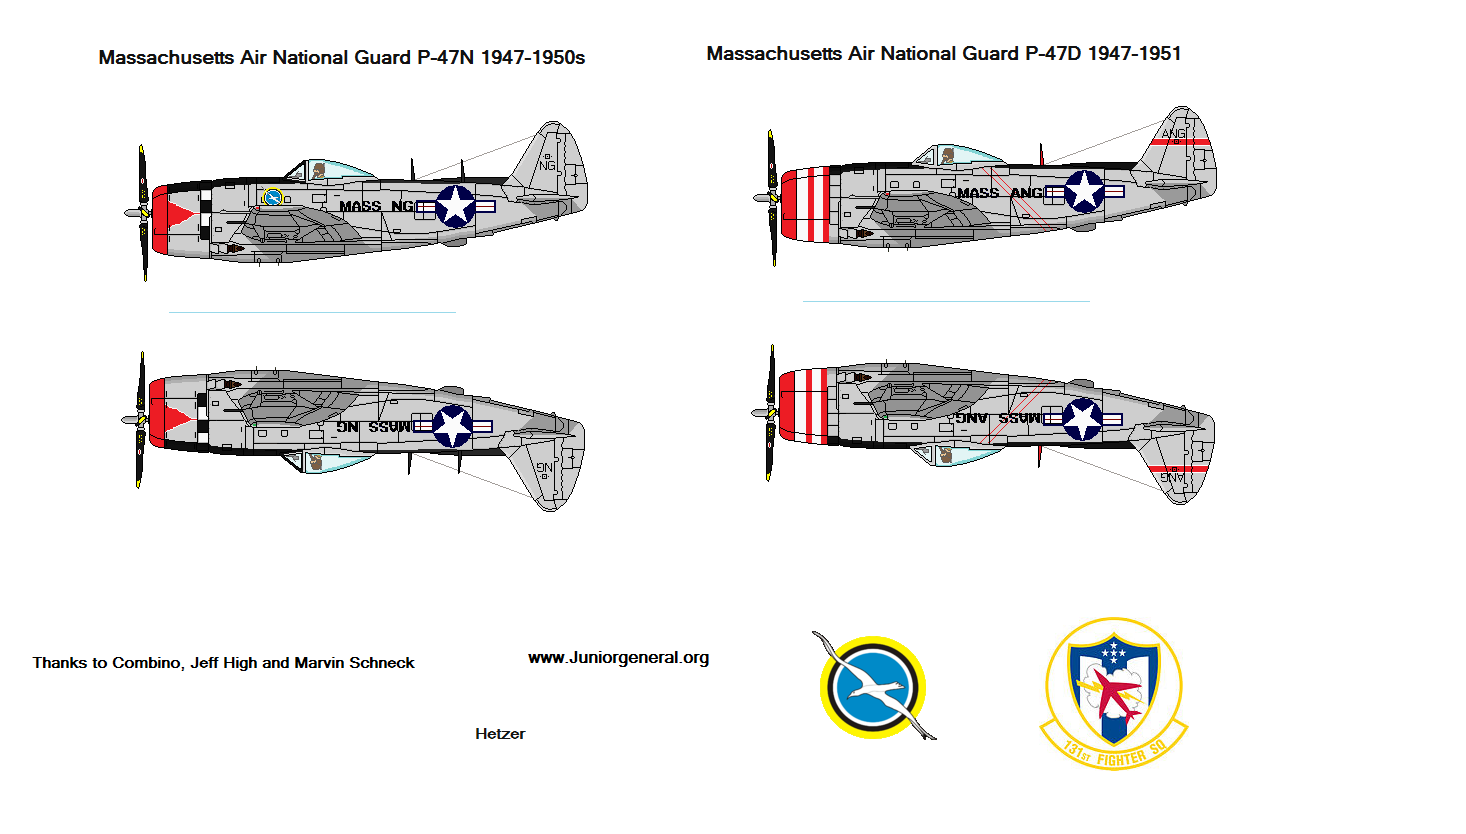 US Air National Guard P-47 Thunderbolt